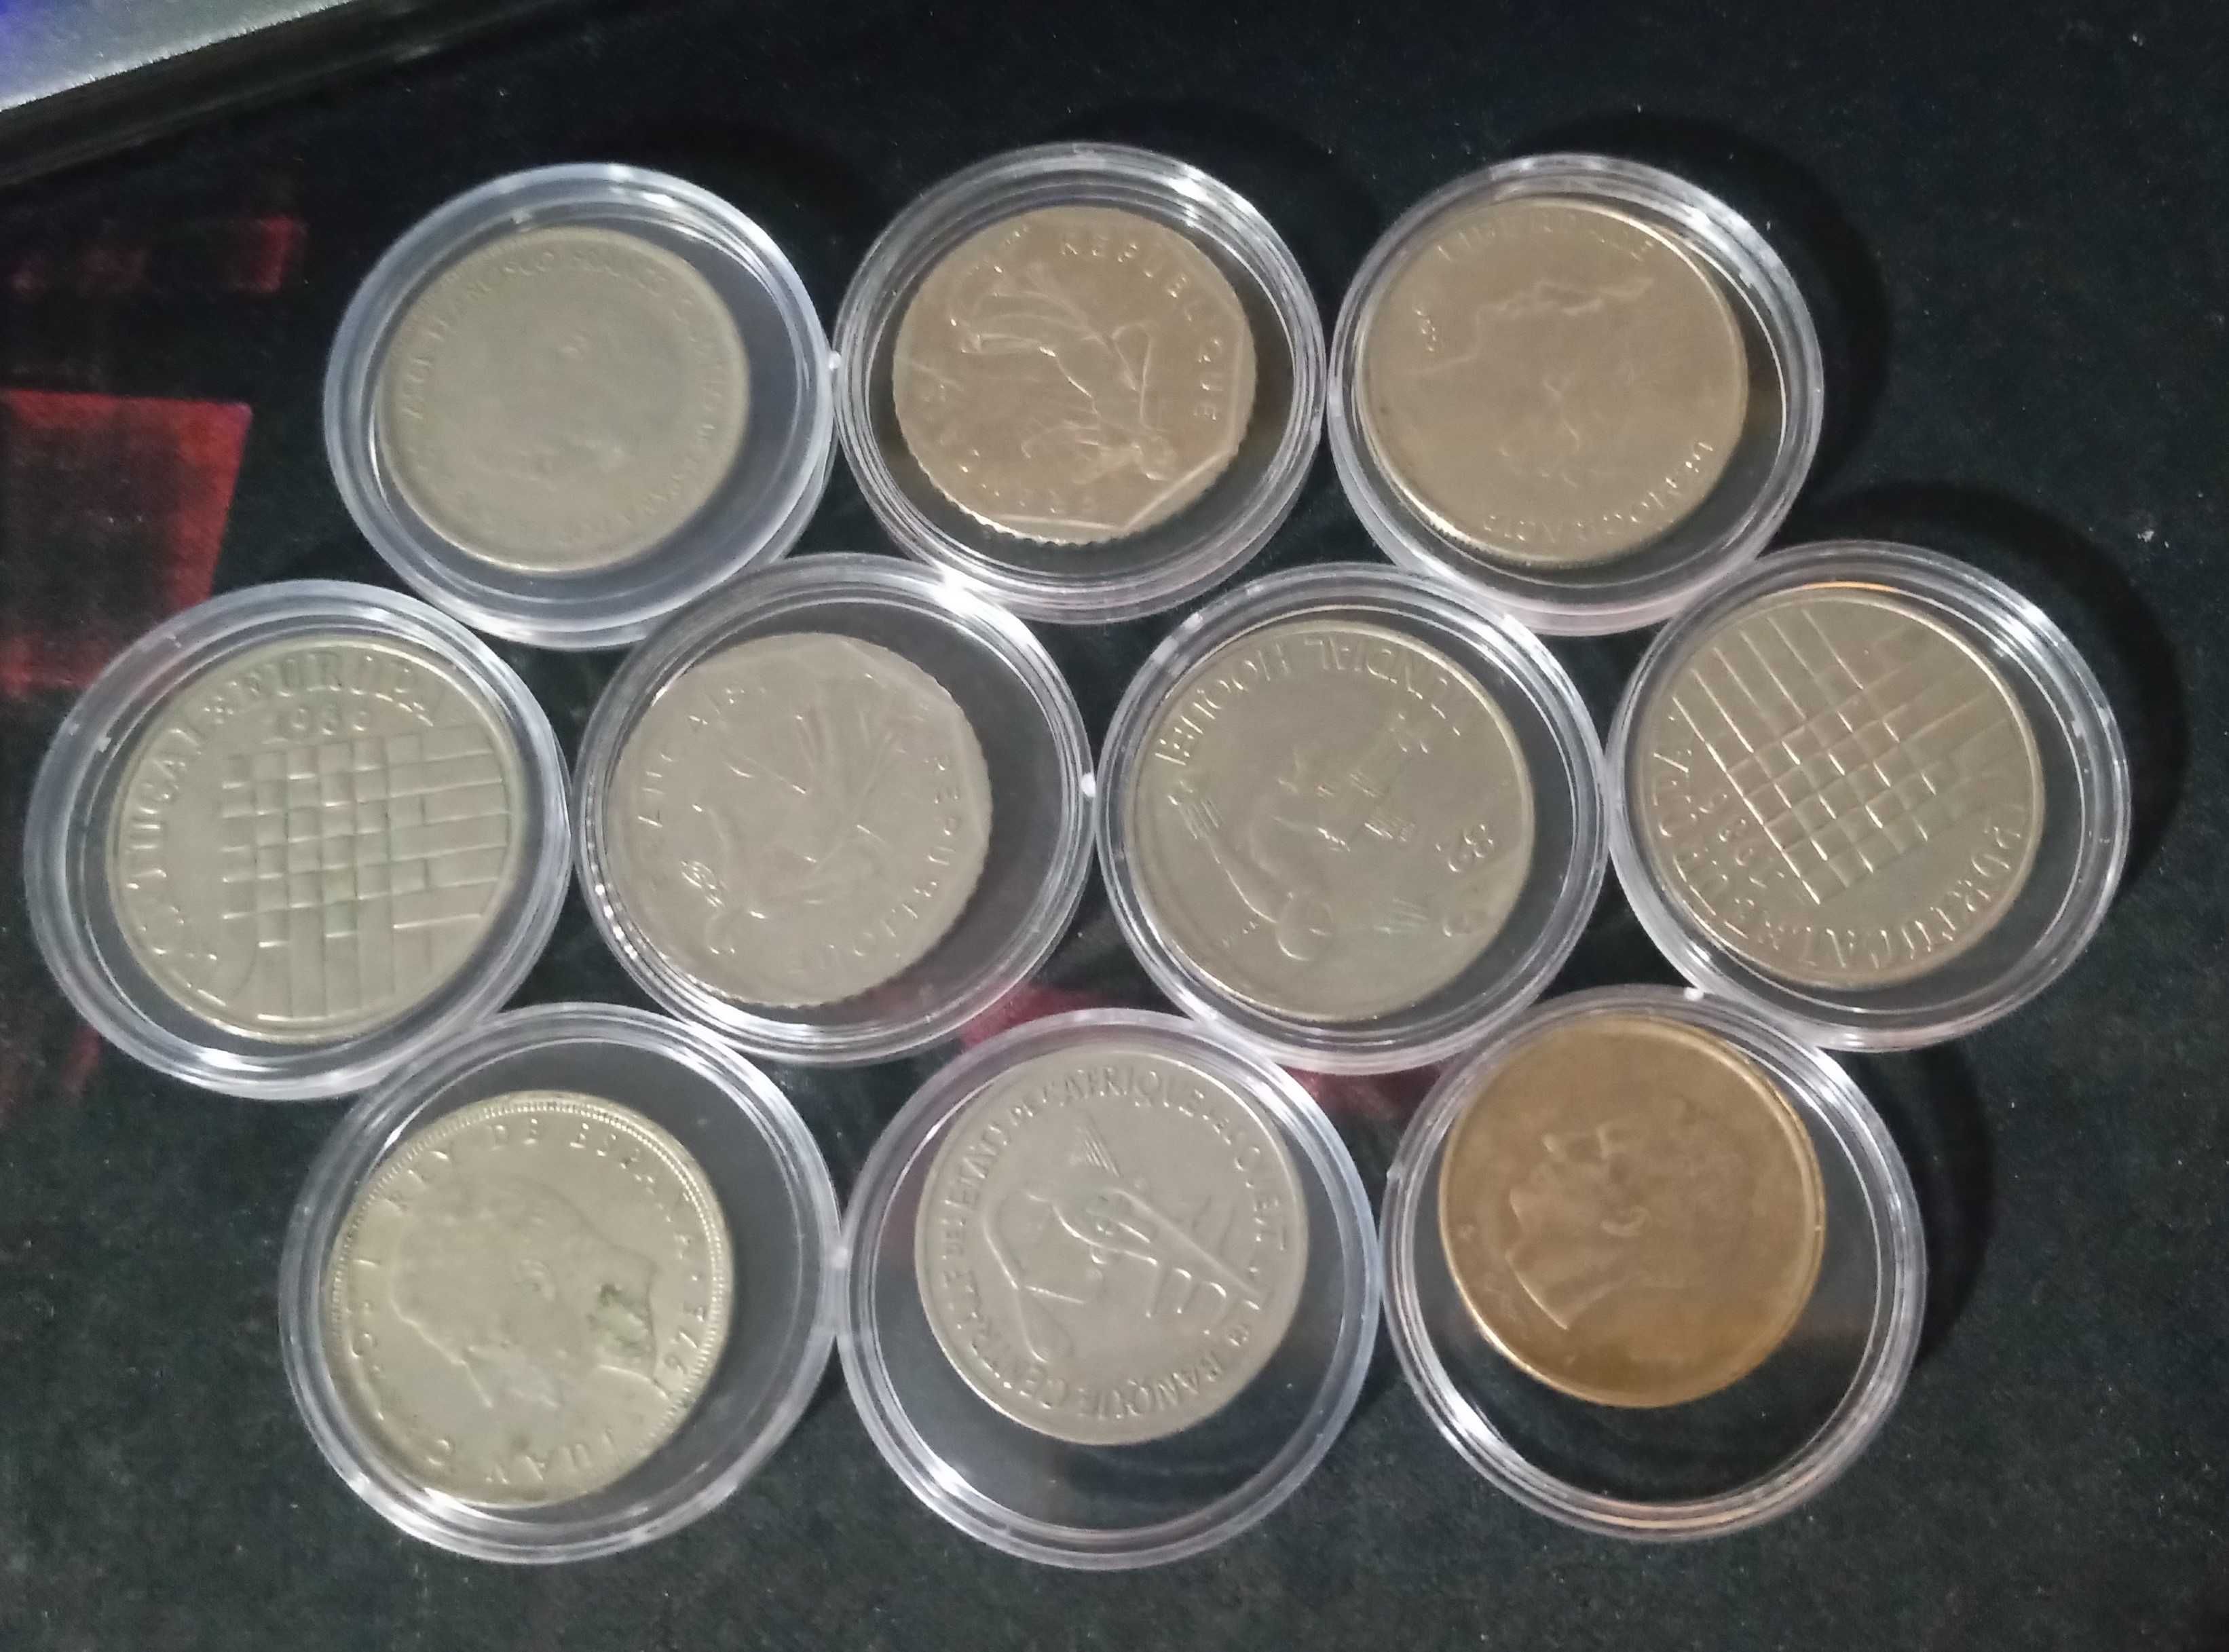 Conjunto 10 moedas antigas com caixas individuais